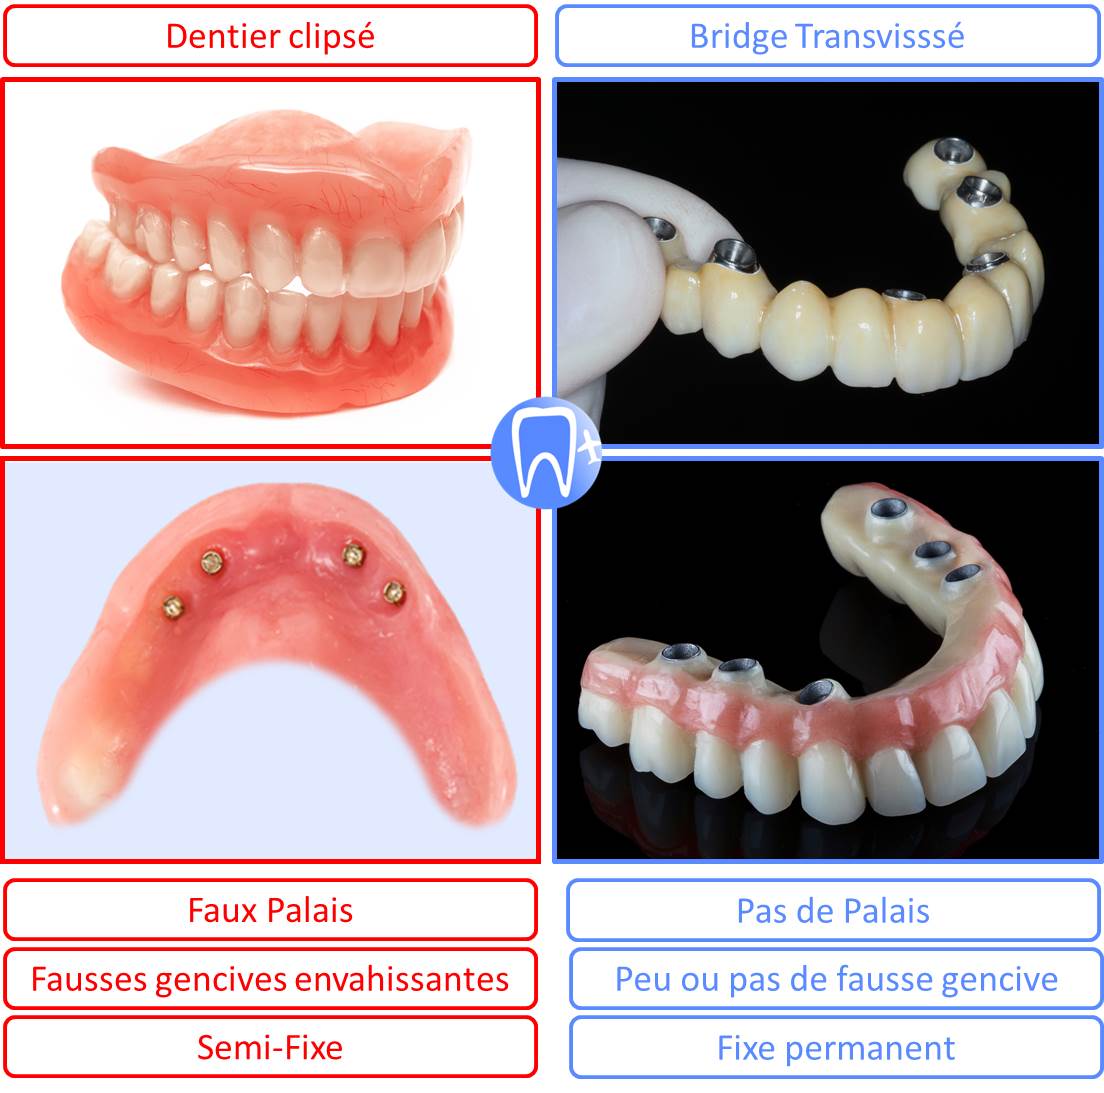 Dentition complète fixe avec bridge ou dentier